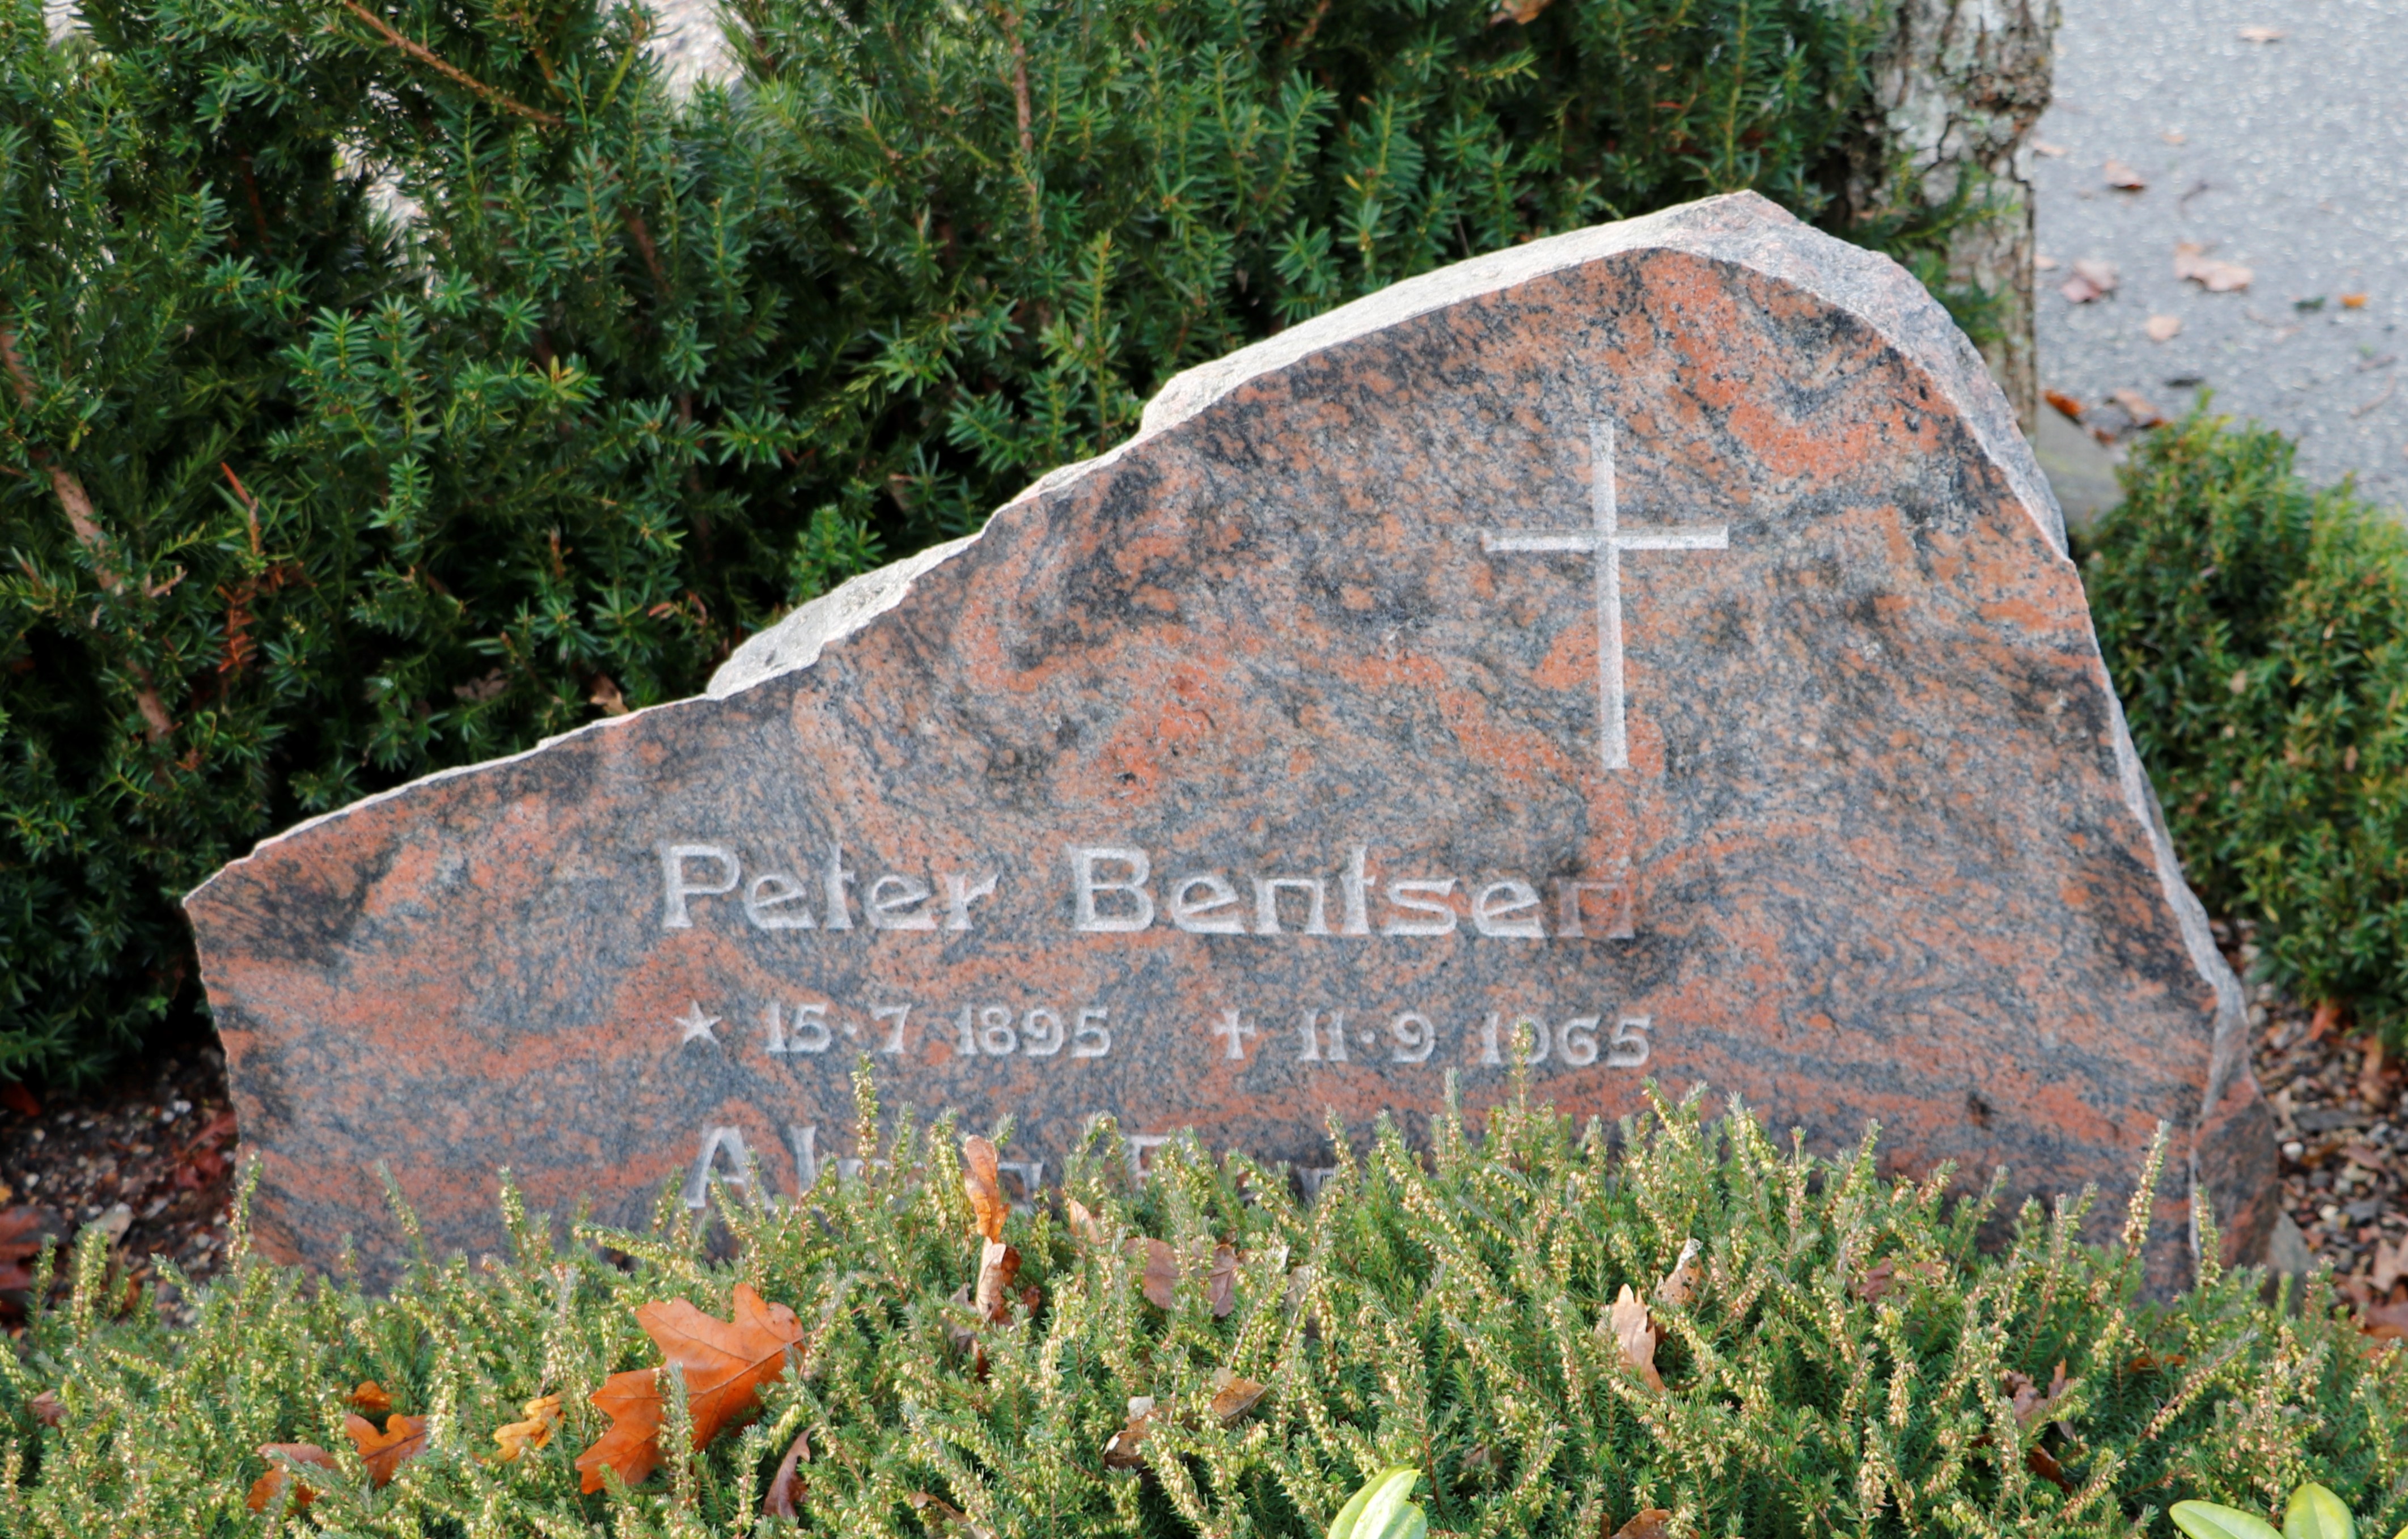 Peter Bentsen f. 15.07.1896 - d- 11.09.1965 .JPG